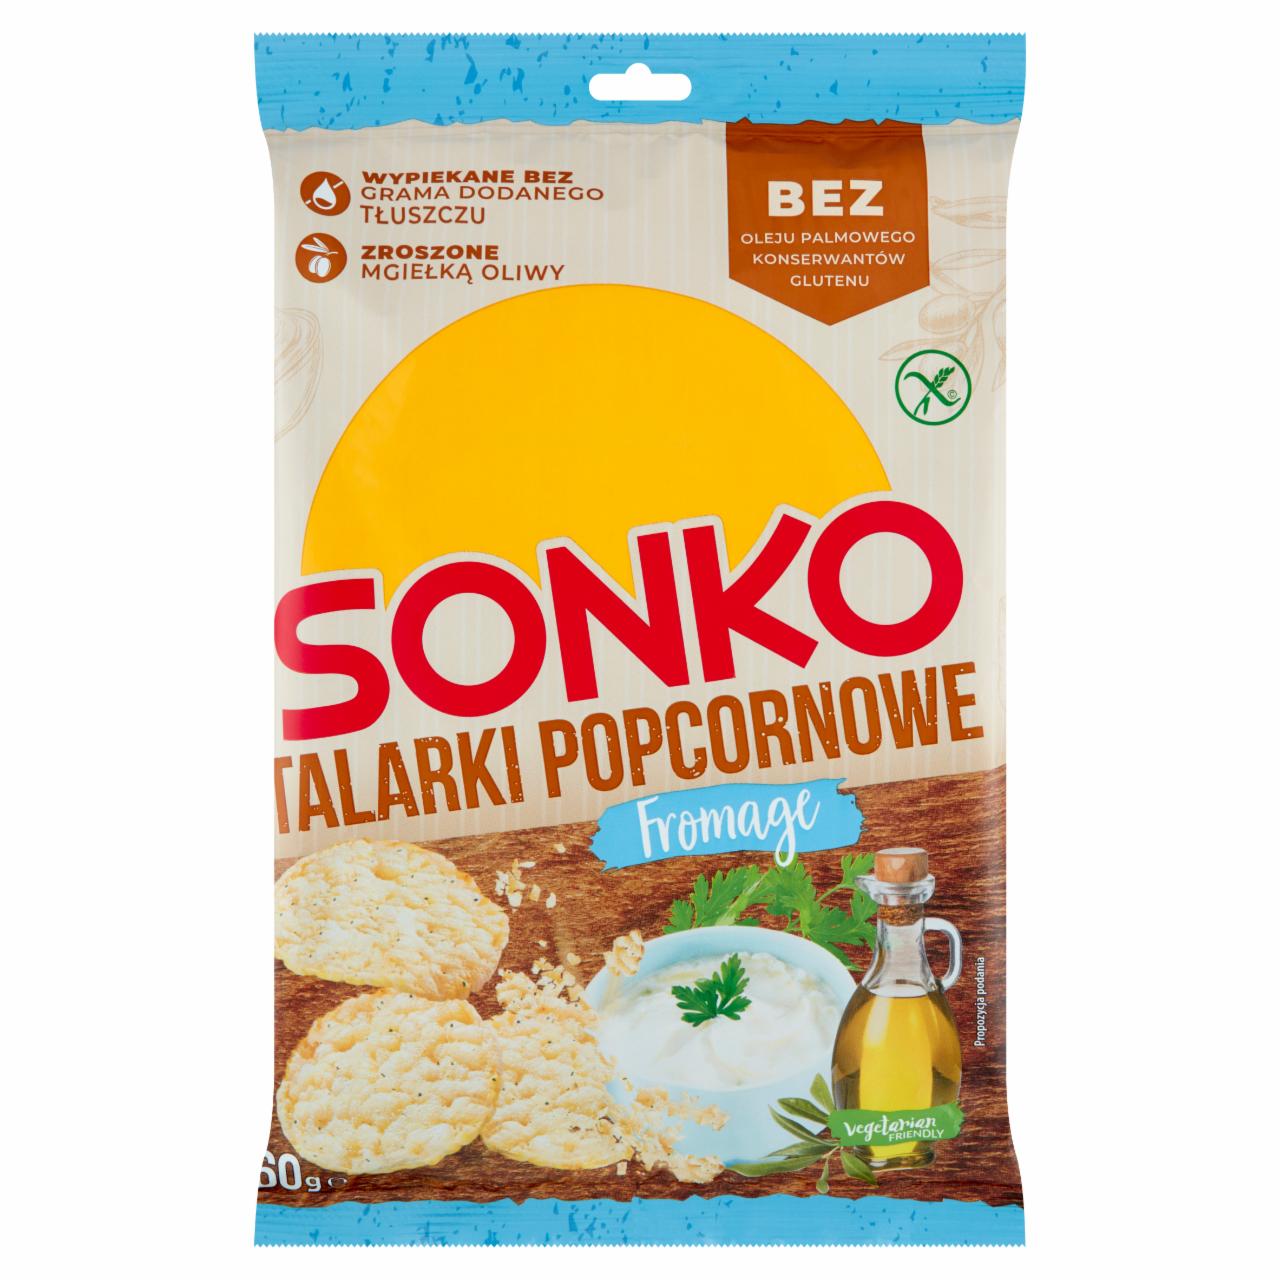 Фото - talarki popcornowe fromage Sonko